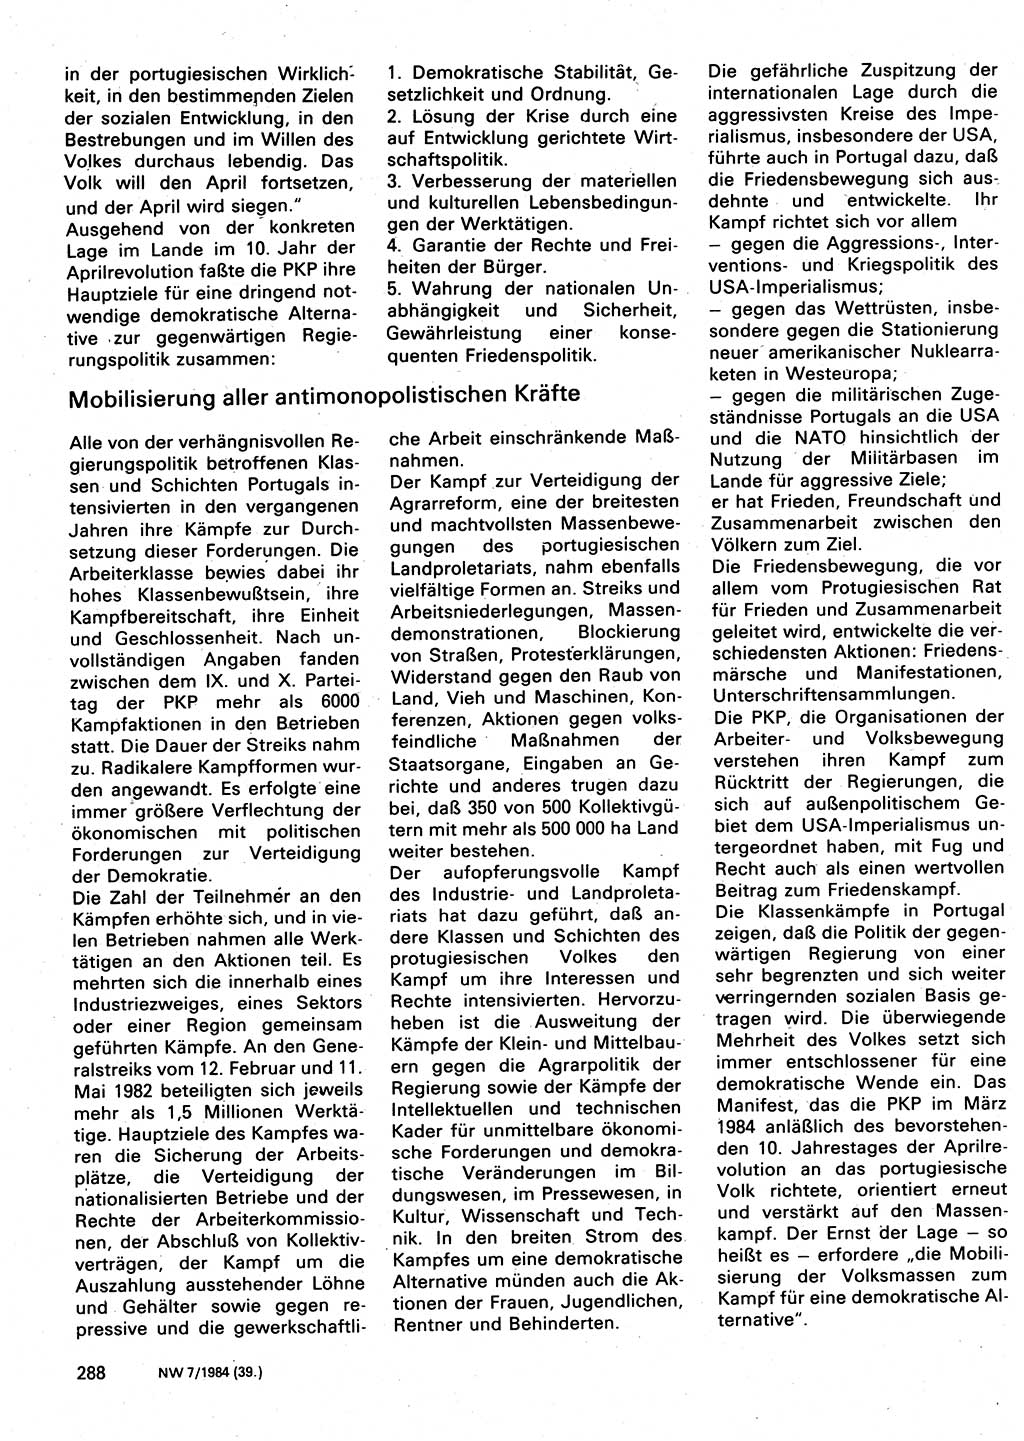 Neuer Weg (NW), Organ des Zentralkomitees (ZK) der SED (Sozialistische Einheitspartei Deutschlands) für Fragen des Parteilebens, 39. Jahrgang [Deutsche Demokratische Republik (DDR)] 1984, Seite 288 (NW ZK SED DDR 1984, S. 288)